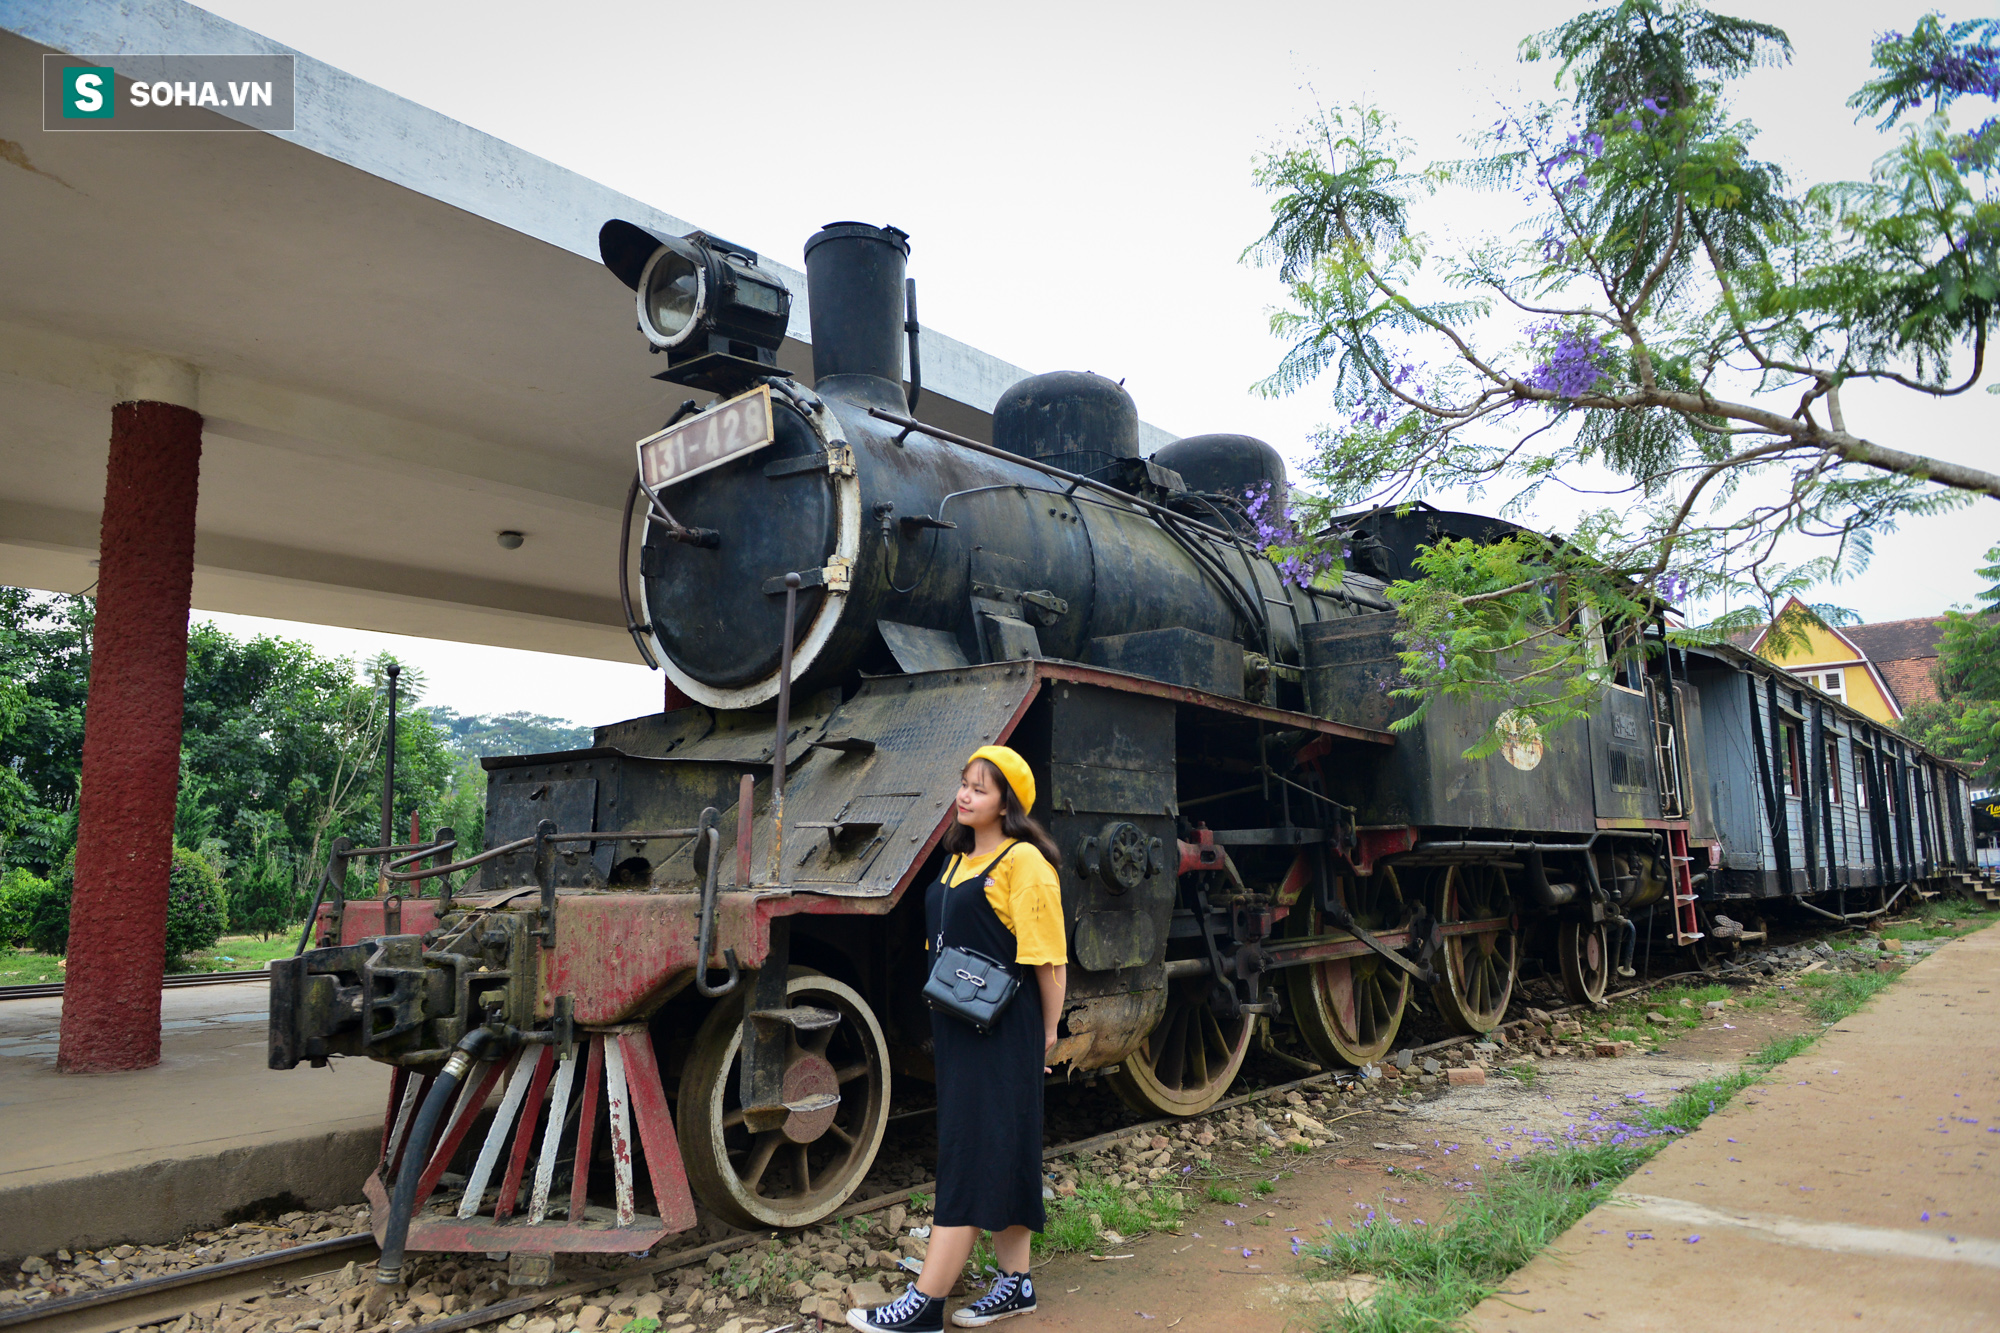 [ẢNH] Những đoàn tàu trăm tuổi vang bóng một thời tại nhà ga đường sắt cao nhất Việt Nam - Ảnh 3.